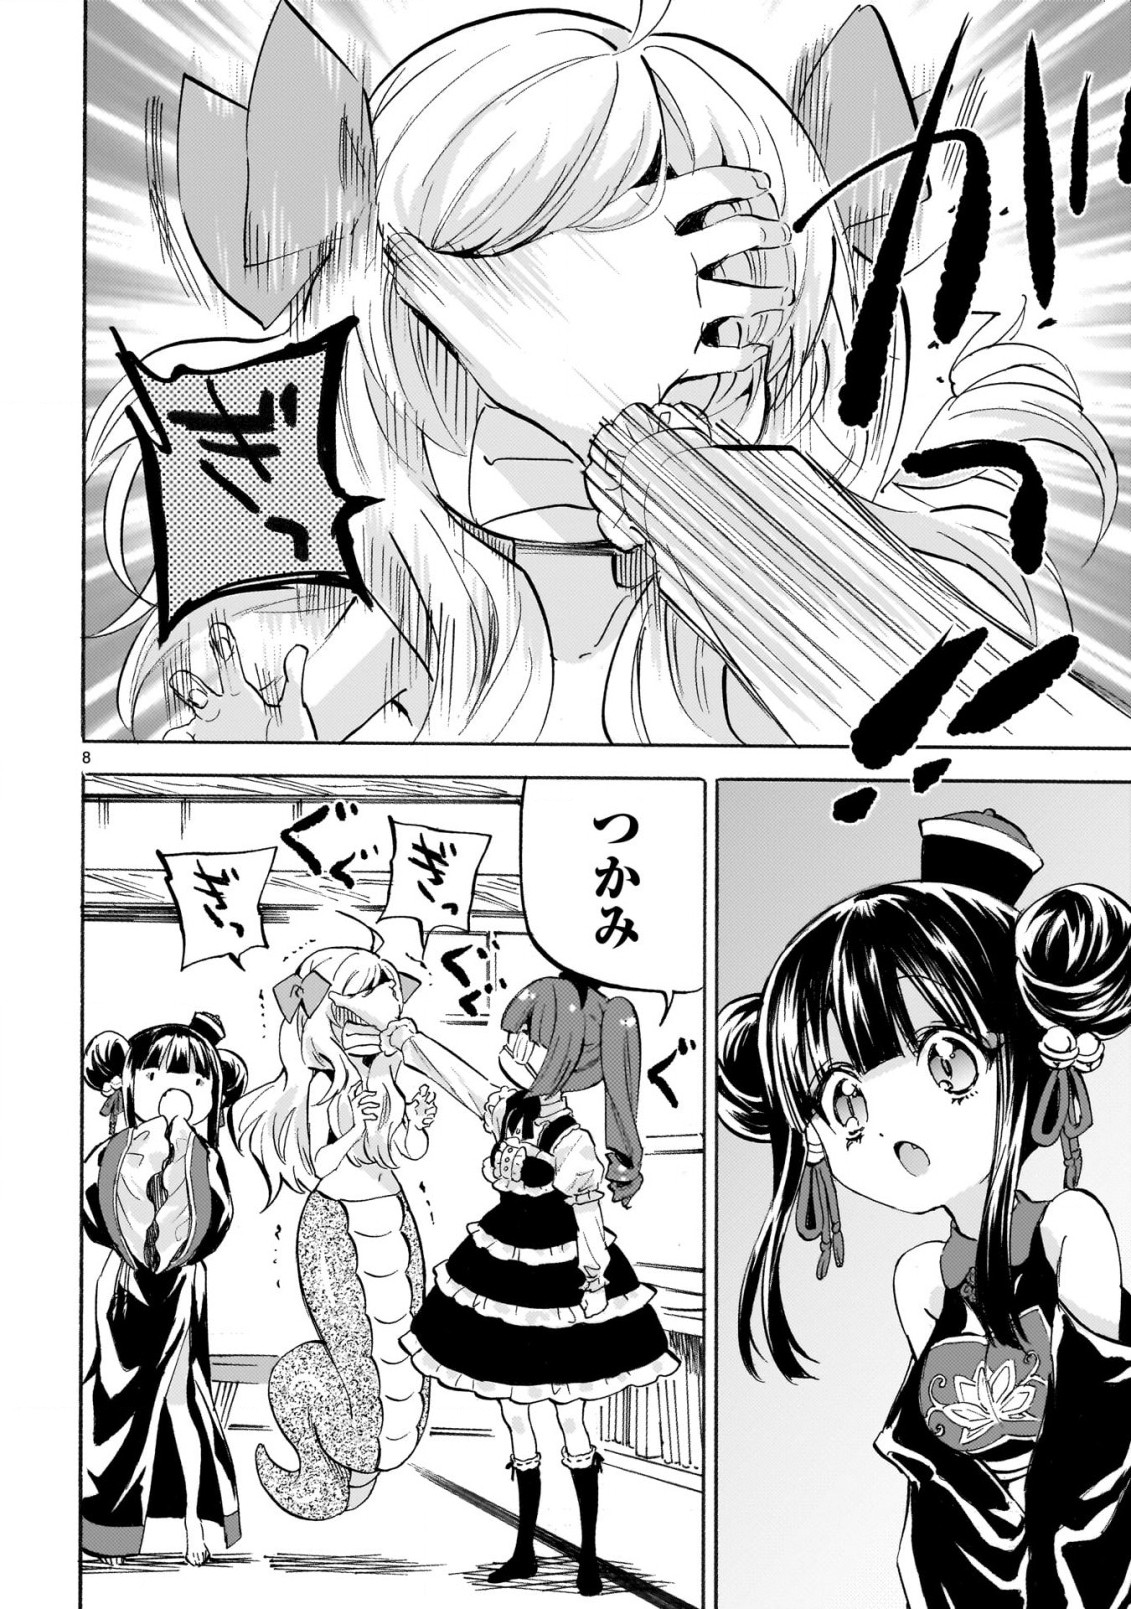 Jashin-chan Dropkick - Chapter 231 - Page 8